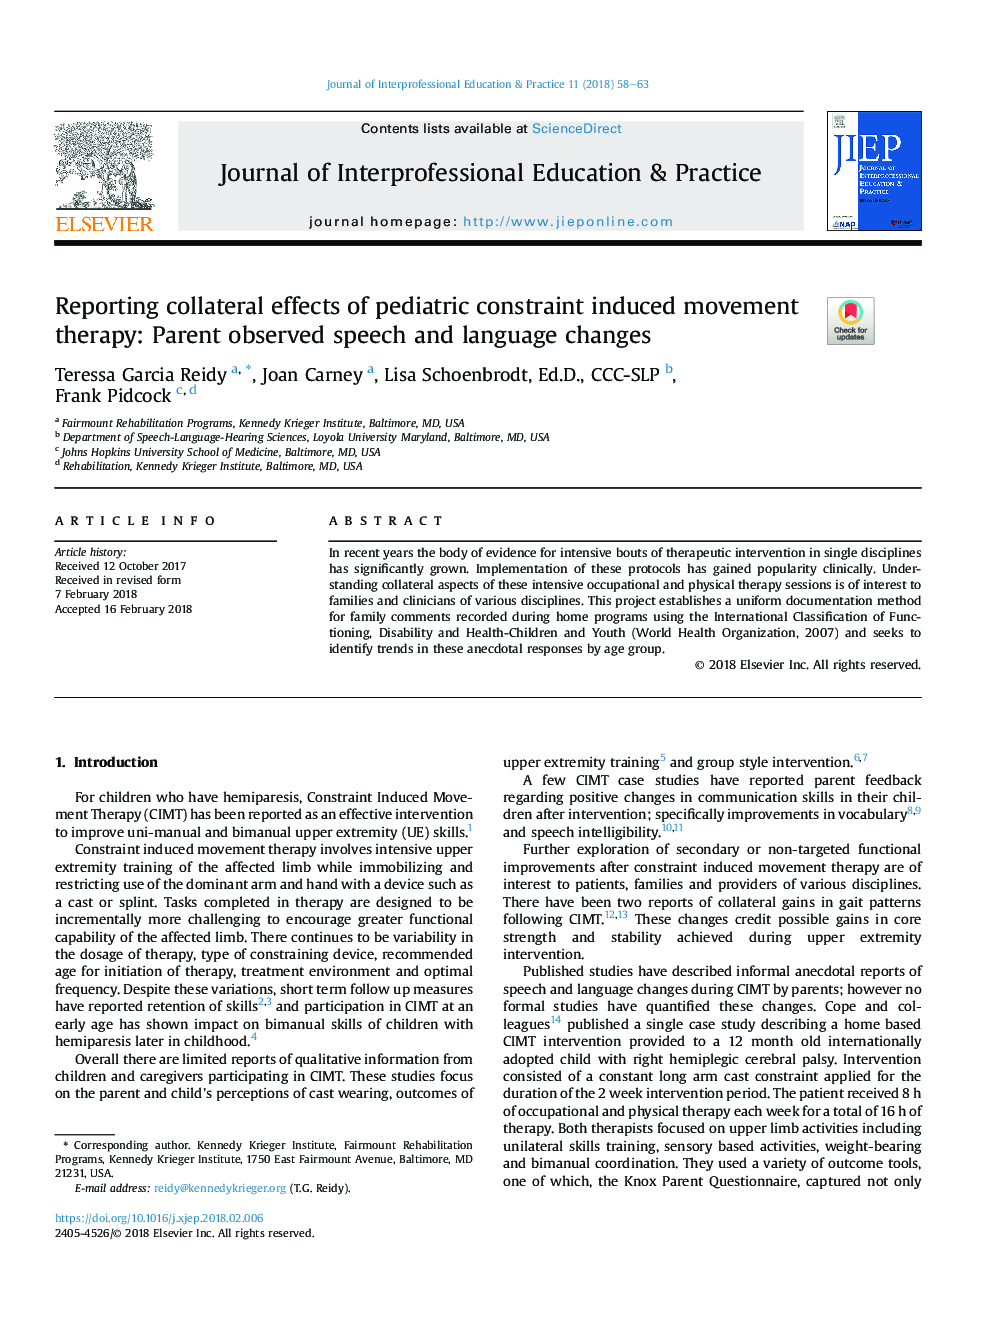 گزارش اثرات جانبی و جانبی محدودیت های کودکان ناشی از حرکت درمان: تغییرات زبان و گفتار والد مشاهده شده 